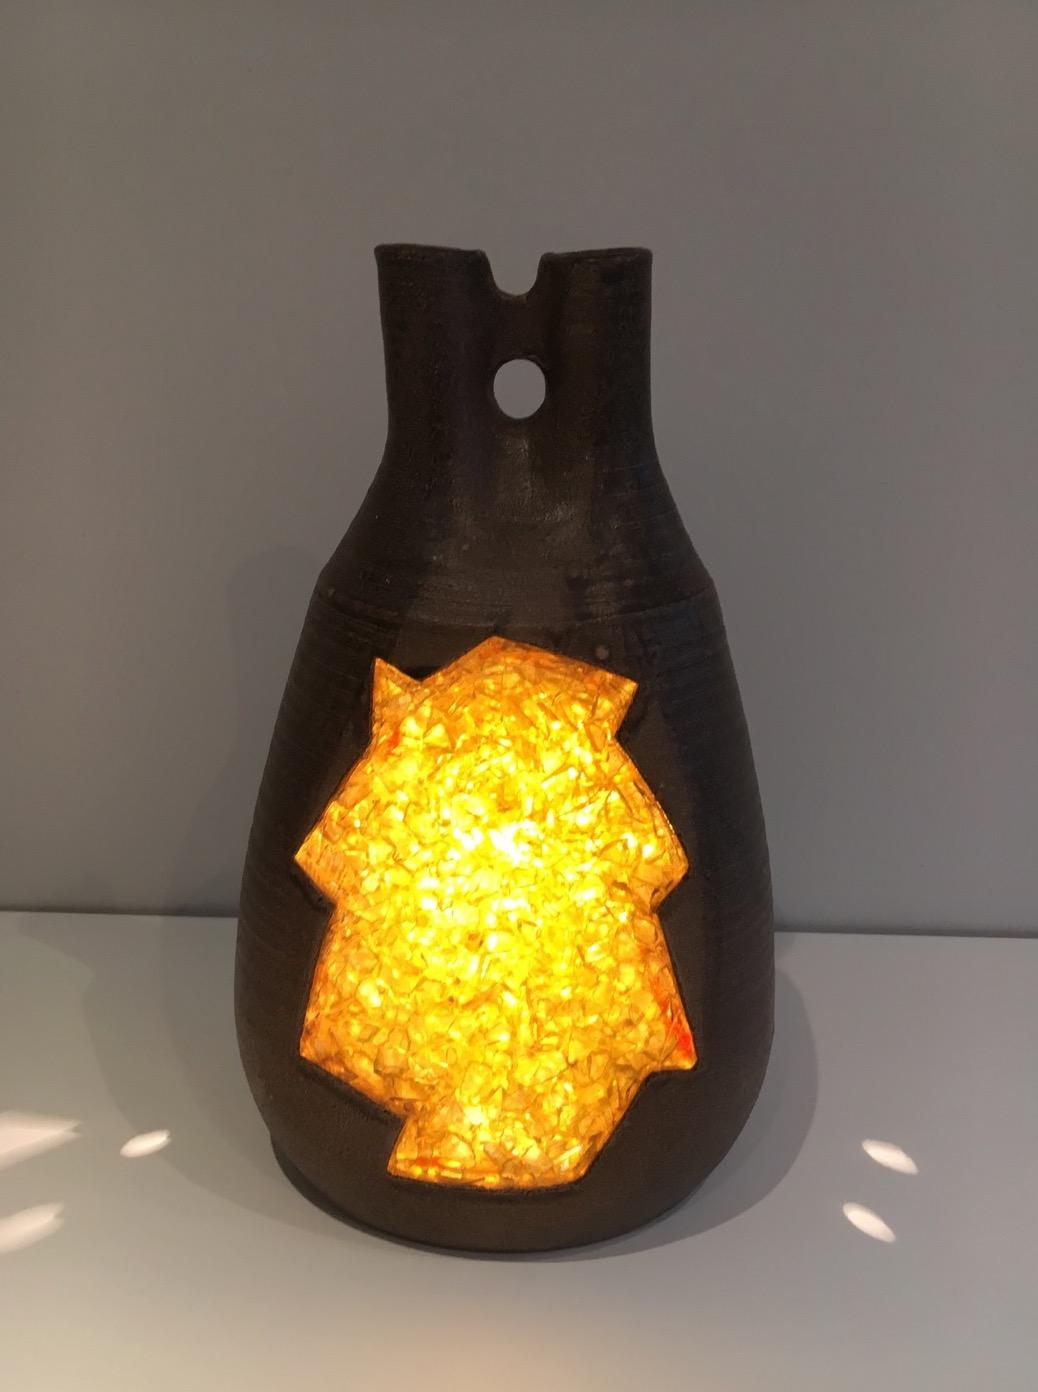 Cette belle et inhabituelle lampe de table est faite de céramique et d'incrustations de verre jaune. La lampe est encore plus belle lorsque la lumière est allumée et révèle tous les détails du verre. Il s'agit d'un ouvrage français, datant de